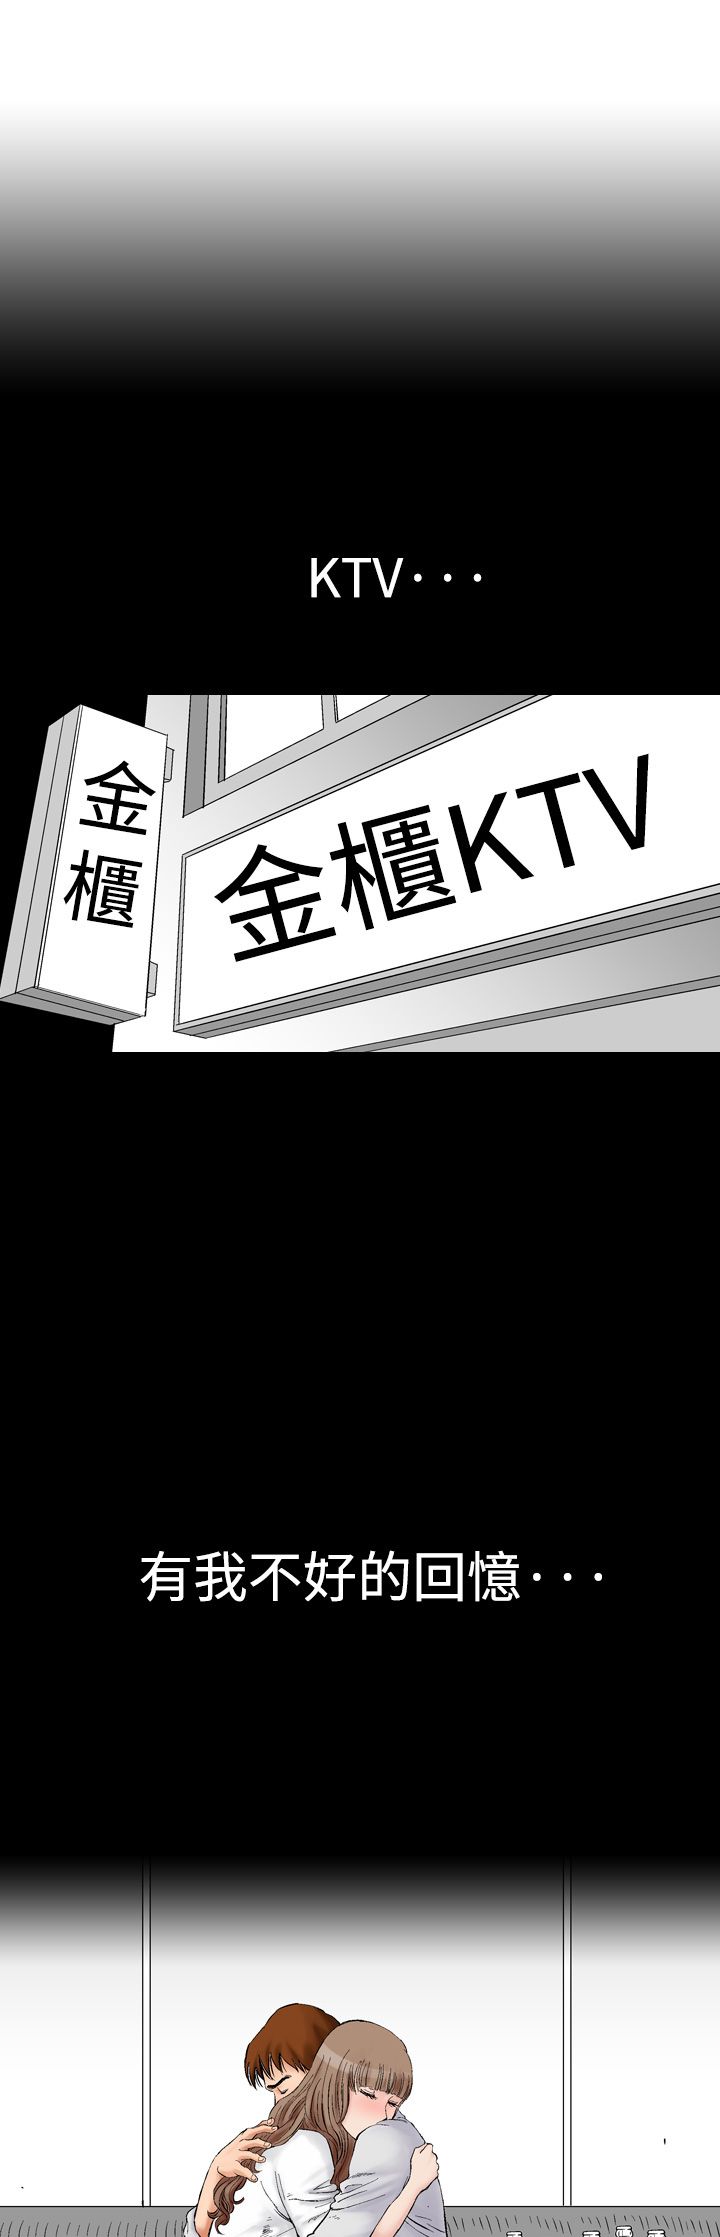 第8章再续KTV3